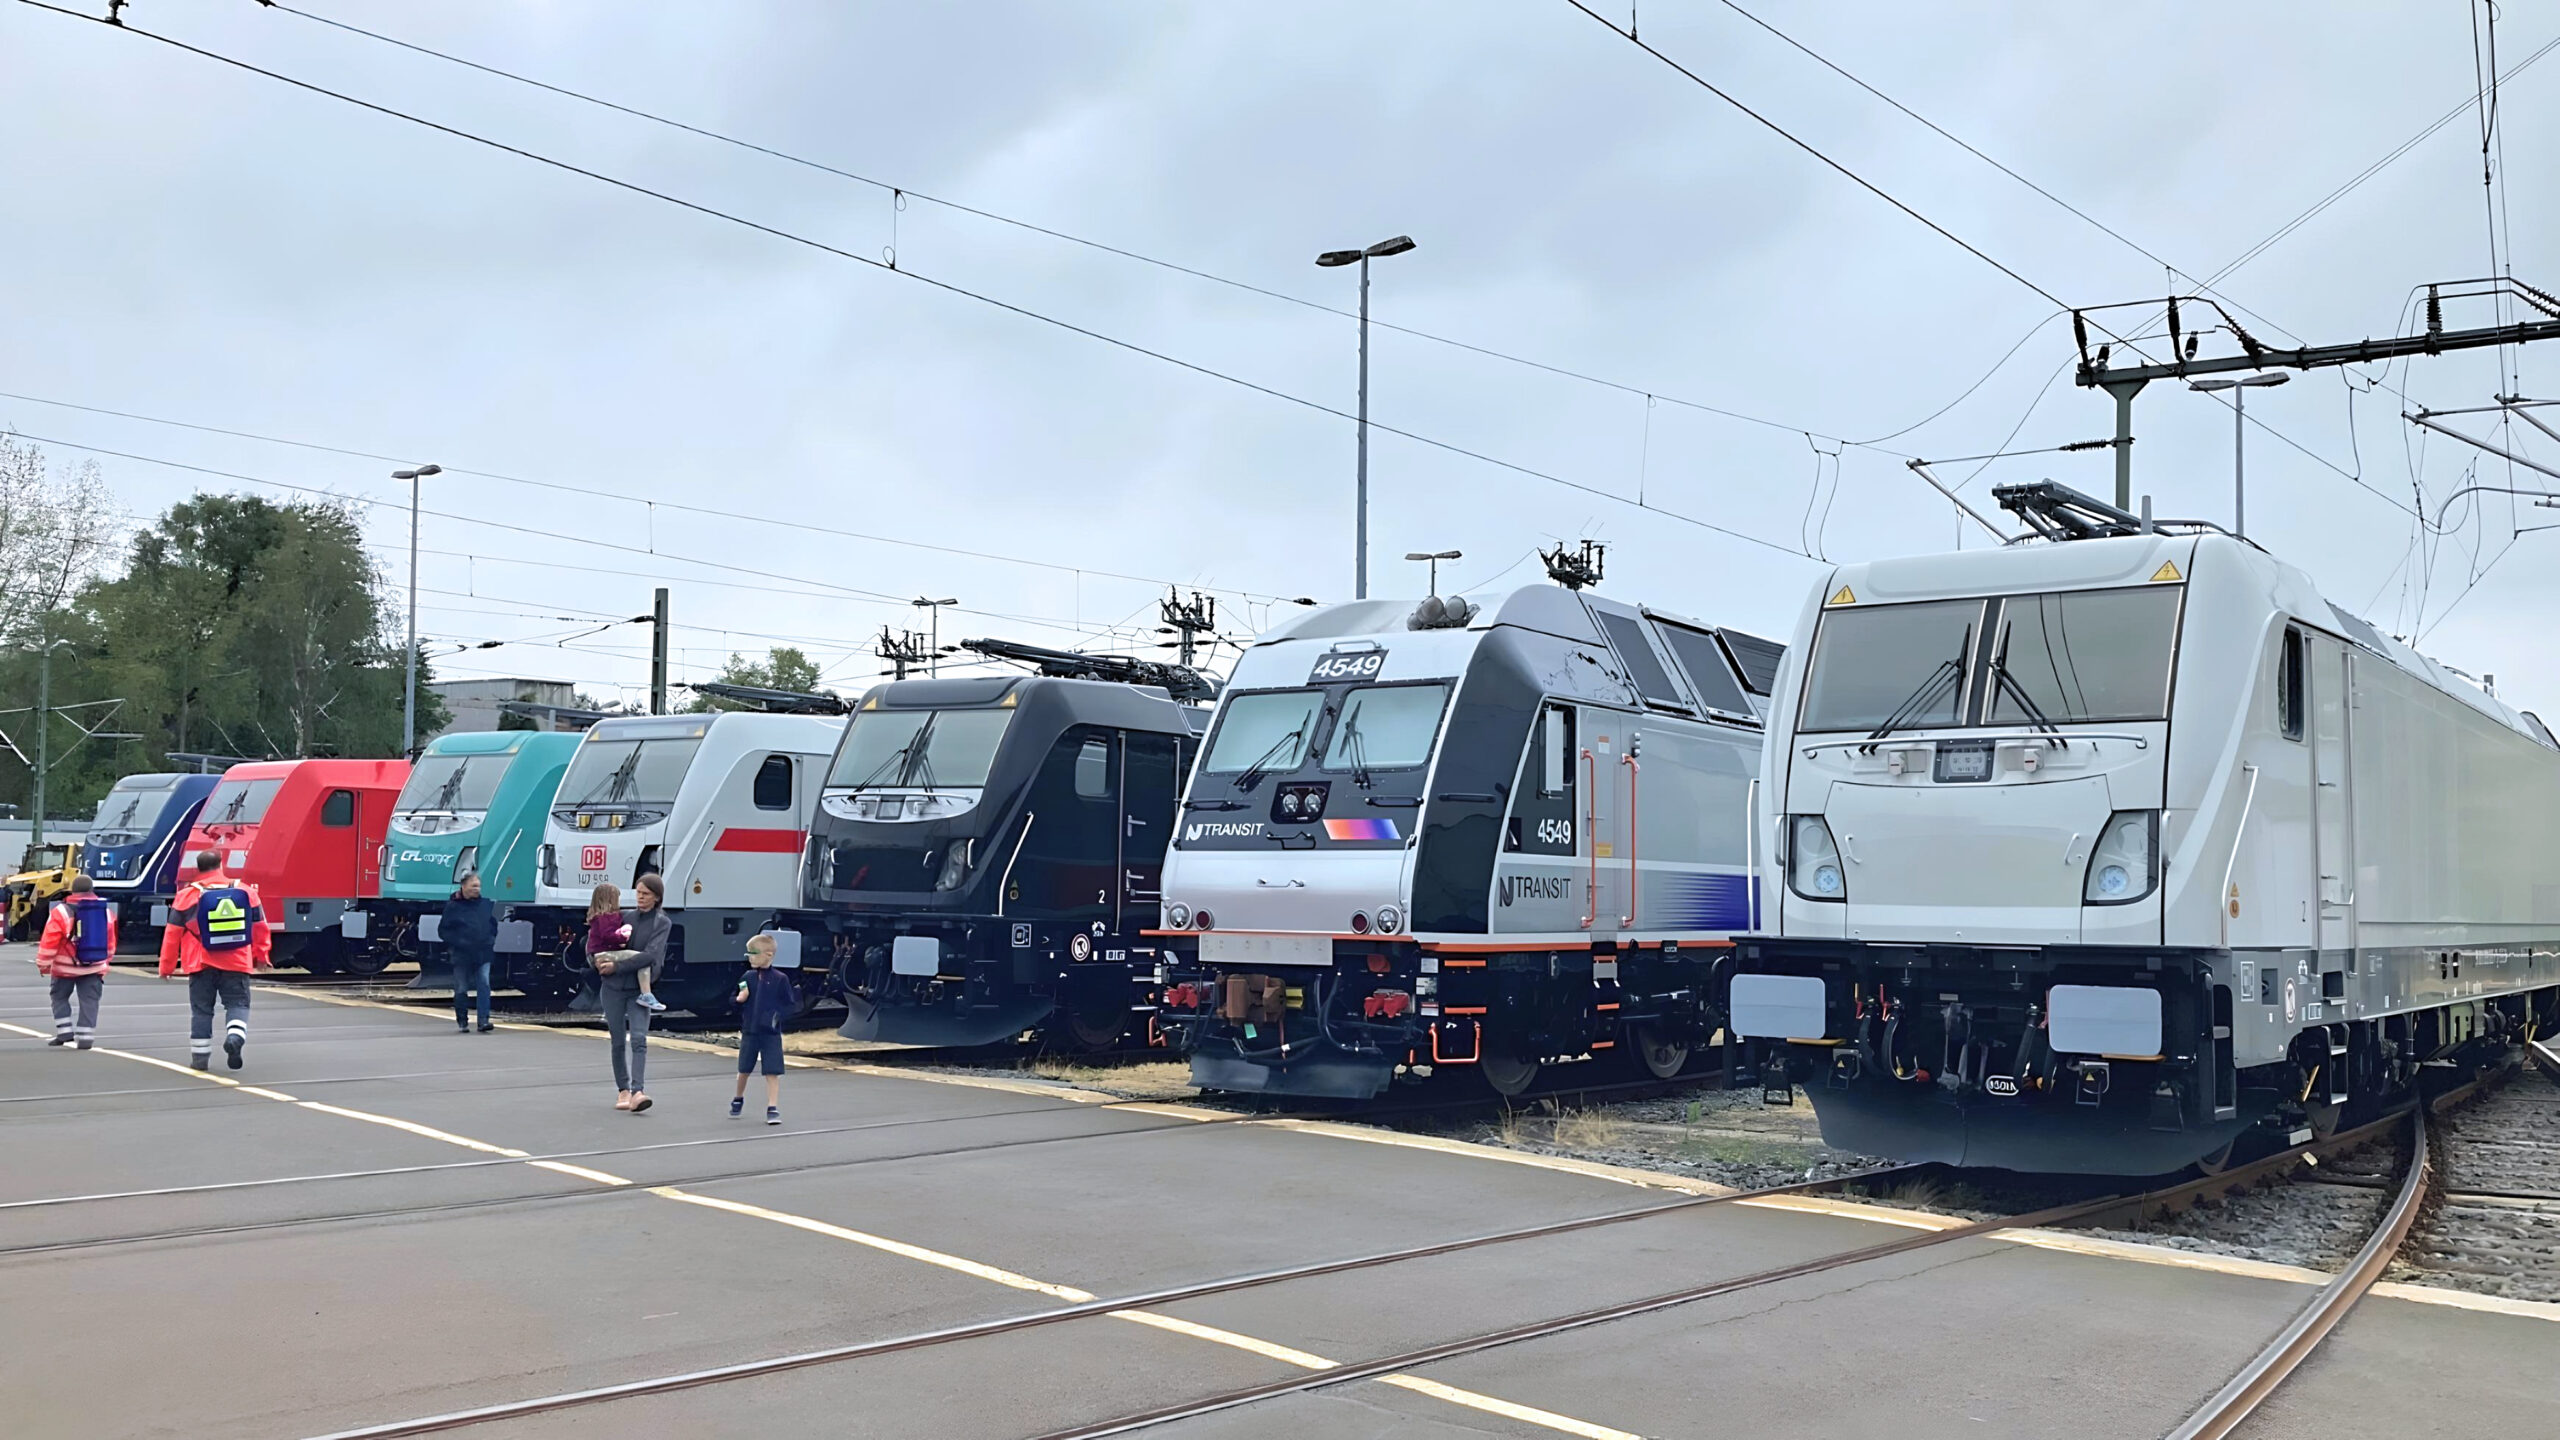 Выставка локомотивов на заводе Alstom в Касселе по случаю 175-летия локмотивостроения на площадке, июль 2023 года. Слева направо: Traxx MS3 для ČD Cargo, Traxx AC2 для DB, Traxx MS3 для CFL Cargo, Traxx AC3 для DB, Traxx MS3 для TX Logistik, ALP-45DP для New Jersey Transit и Traxx MS3 для Akiem